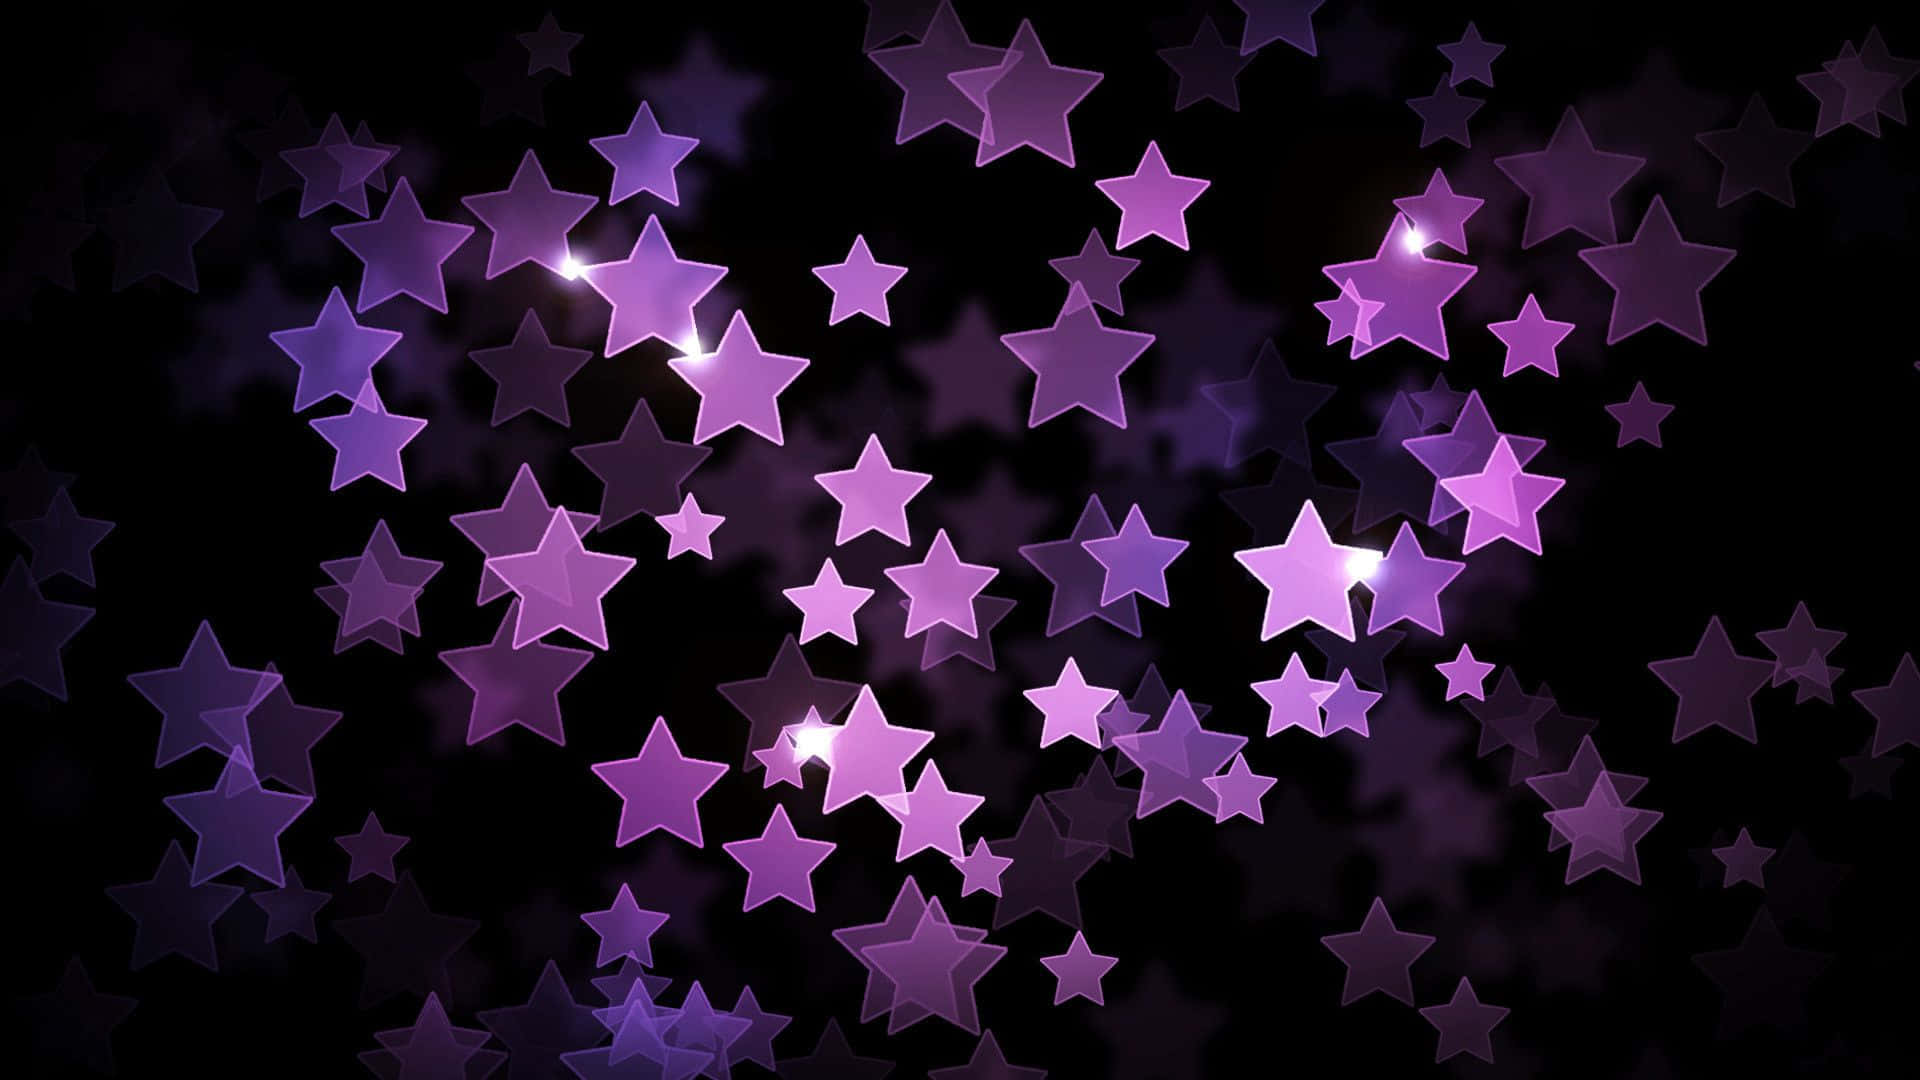 Pink Stars illumination at Fantasy Night Sky Wallpaper